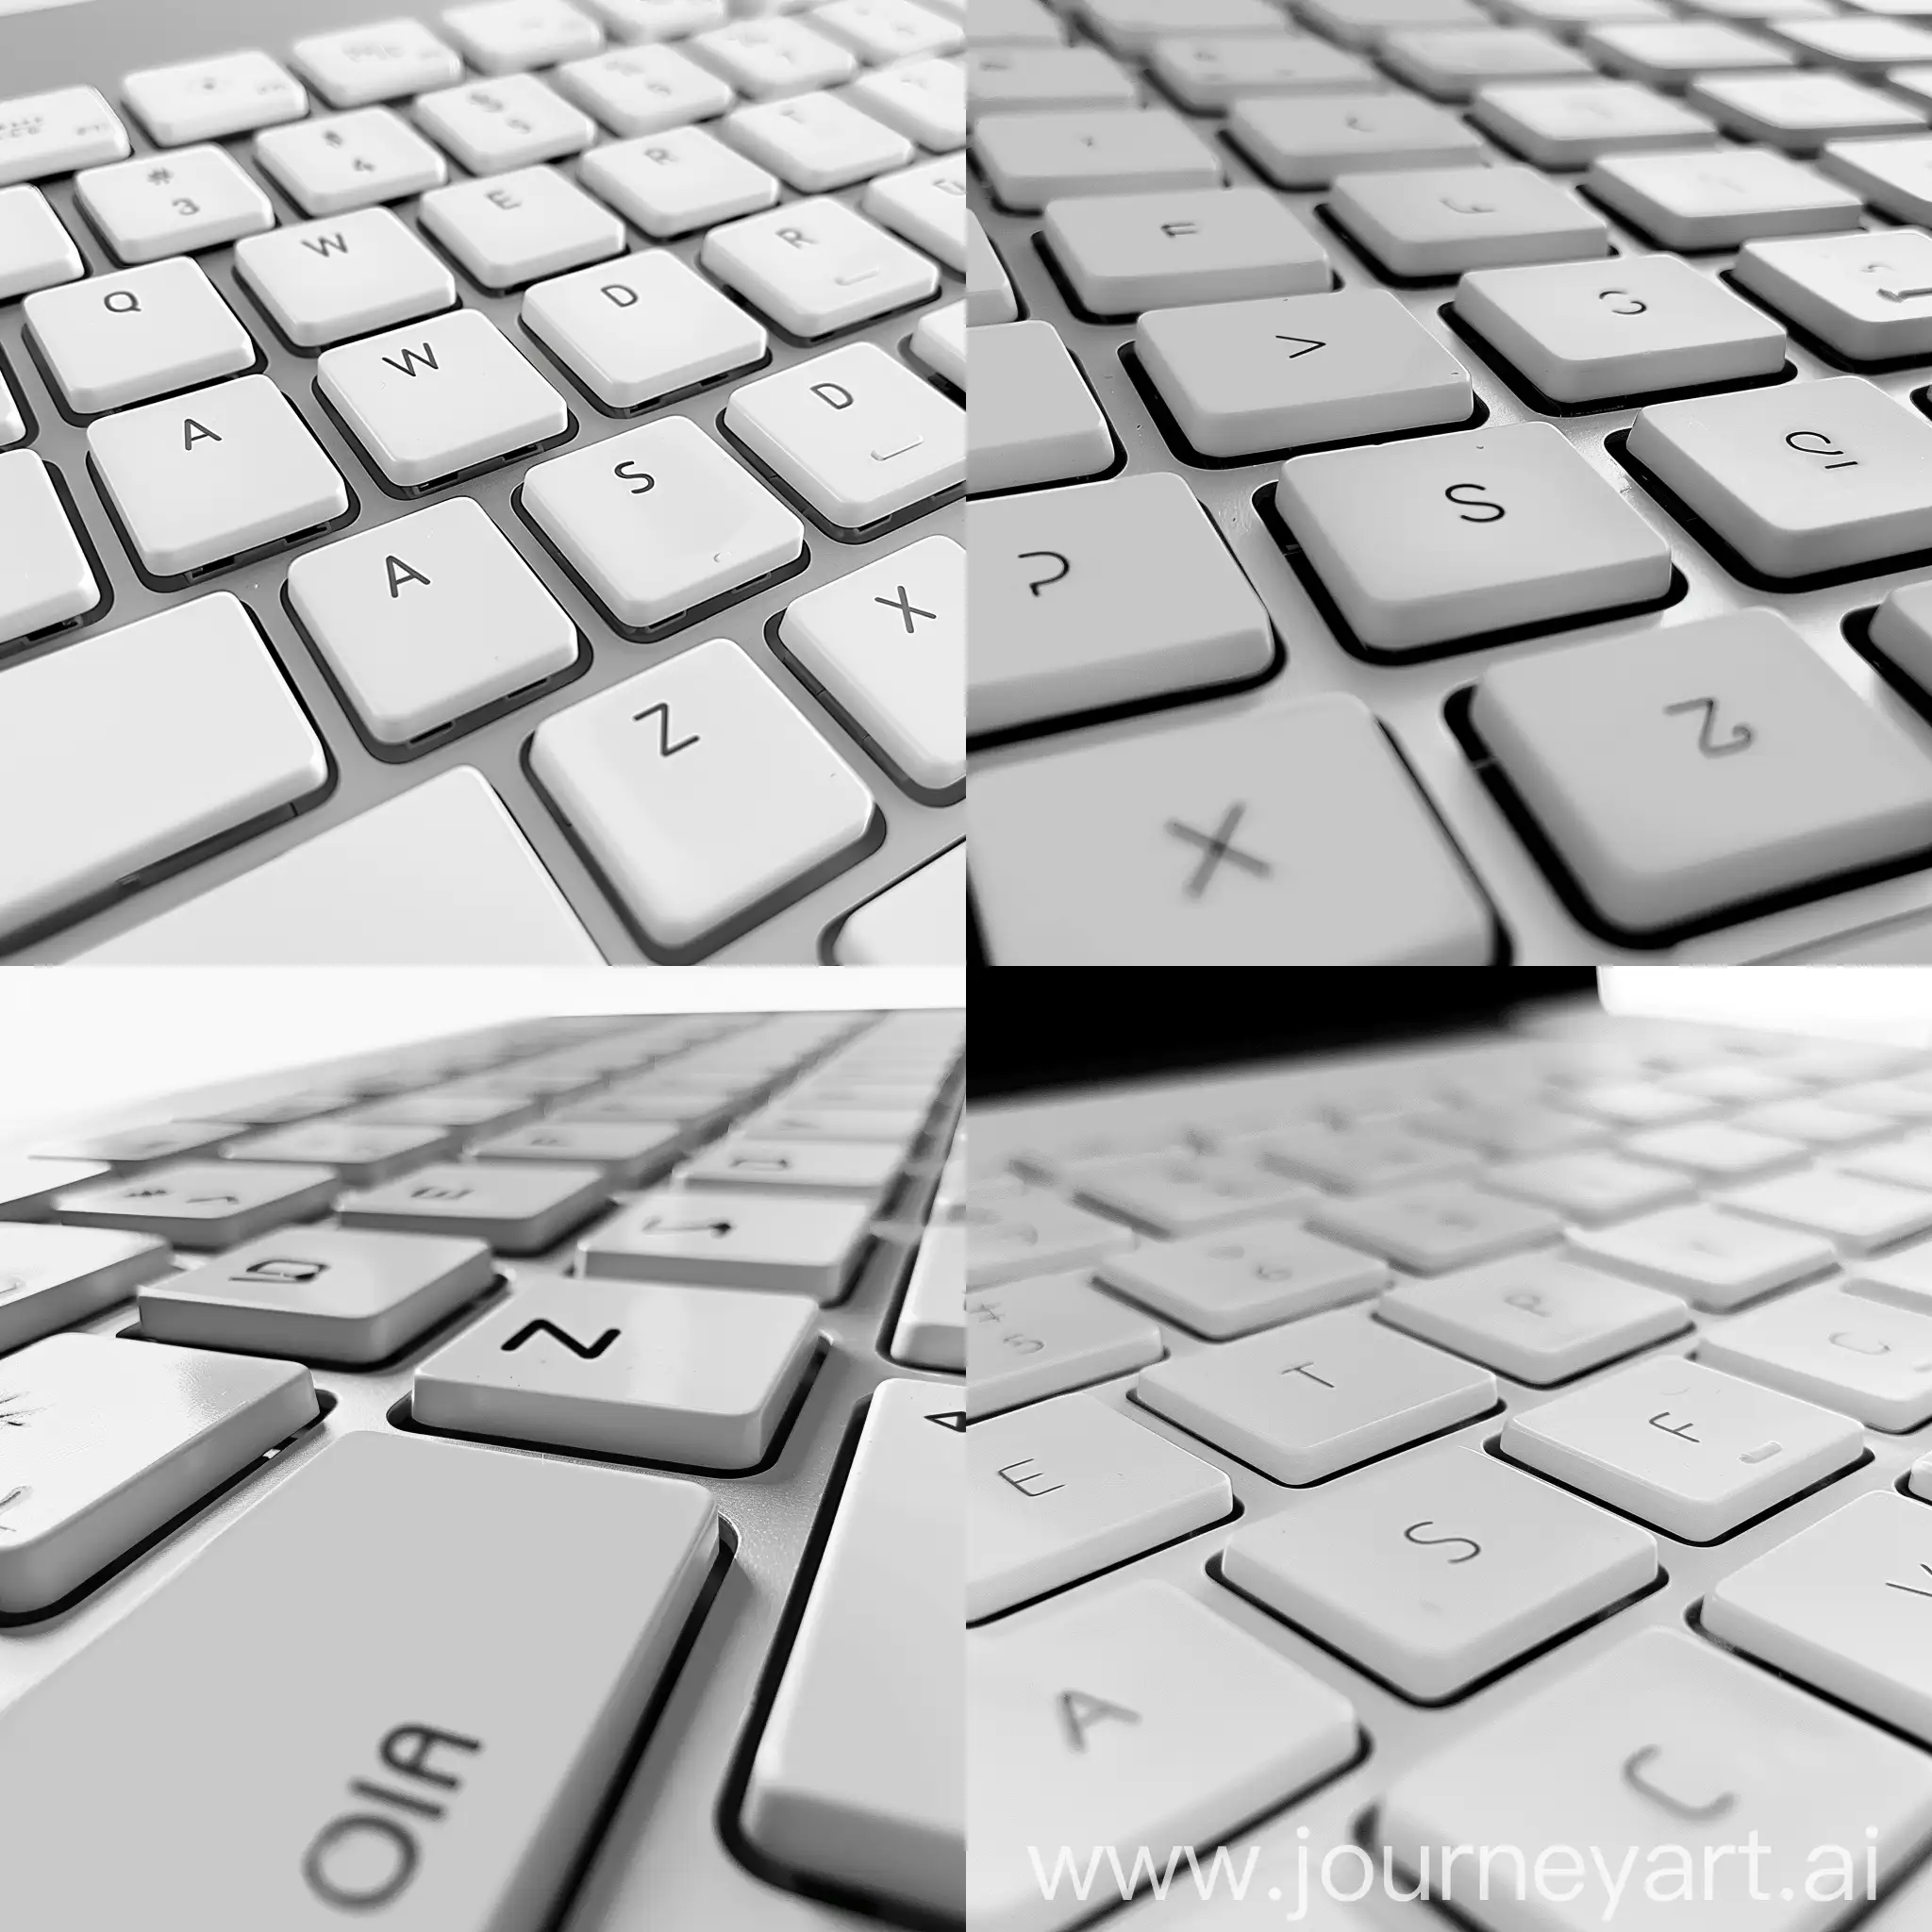 сгенерируй картинку белой клавиатуры, где будет выделен пробел чёрным цветом